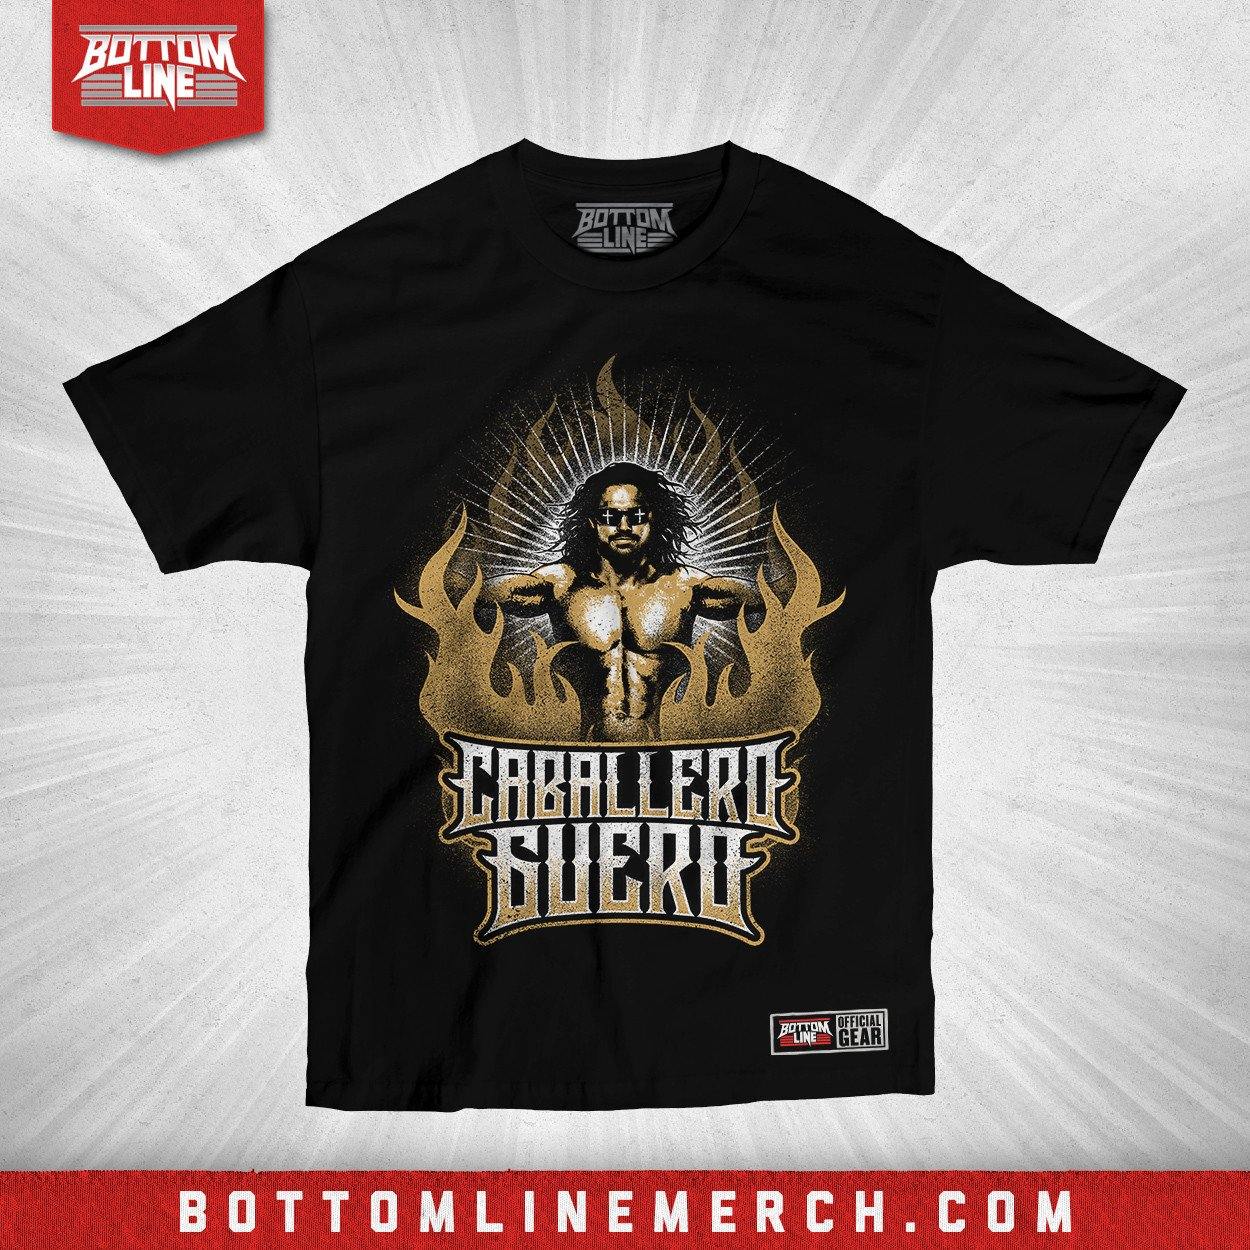 Buy Now – Johnny Mundo "Caballero Guero" Shirt – Wrestler & Wrestling Merch – Bottom Line